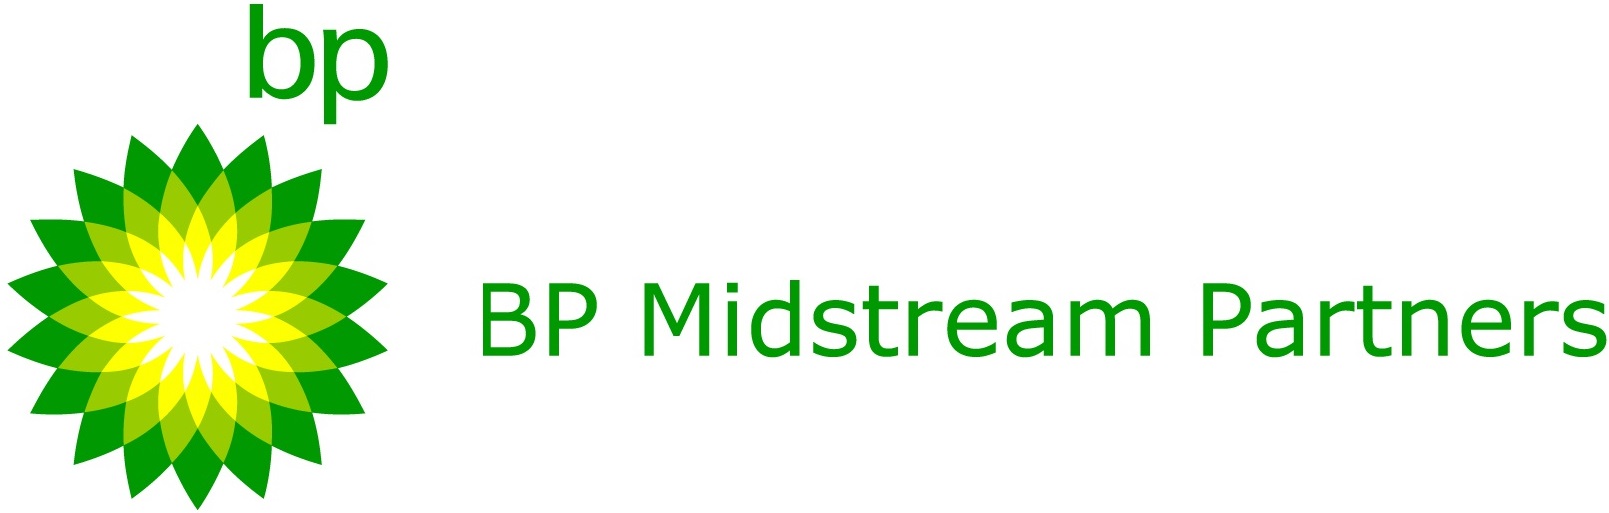 bpmp-logo1a.jpg